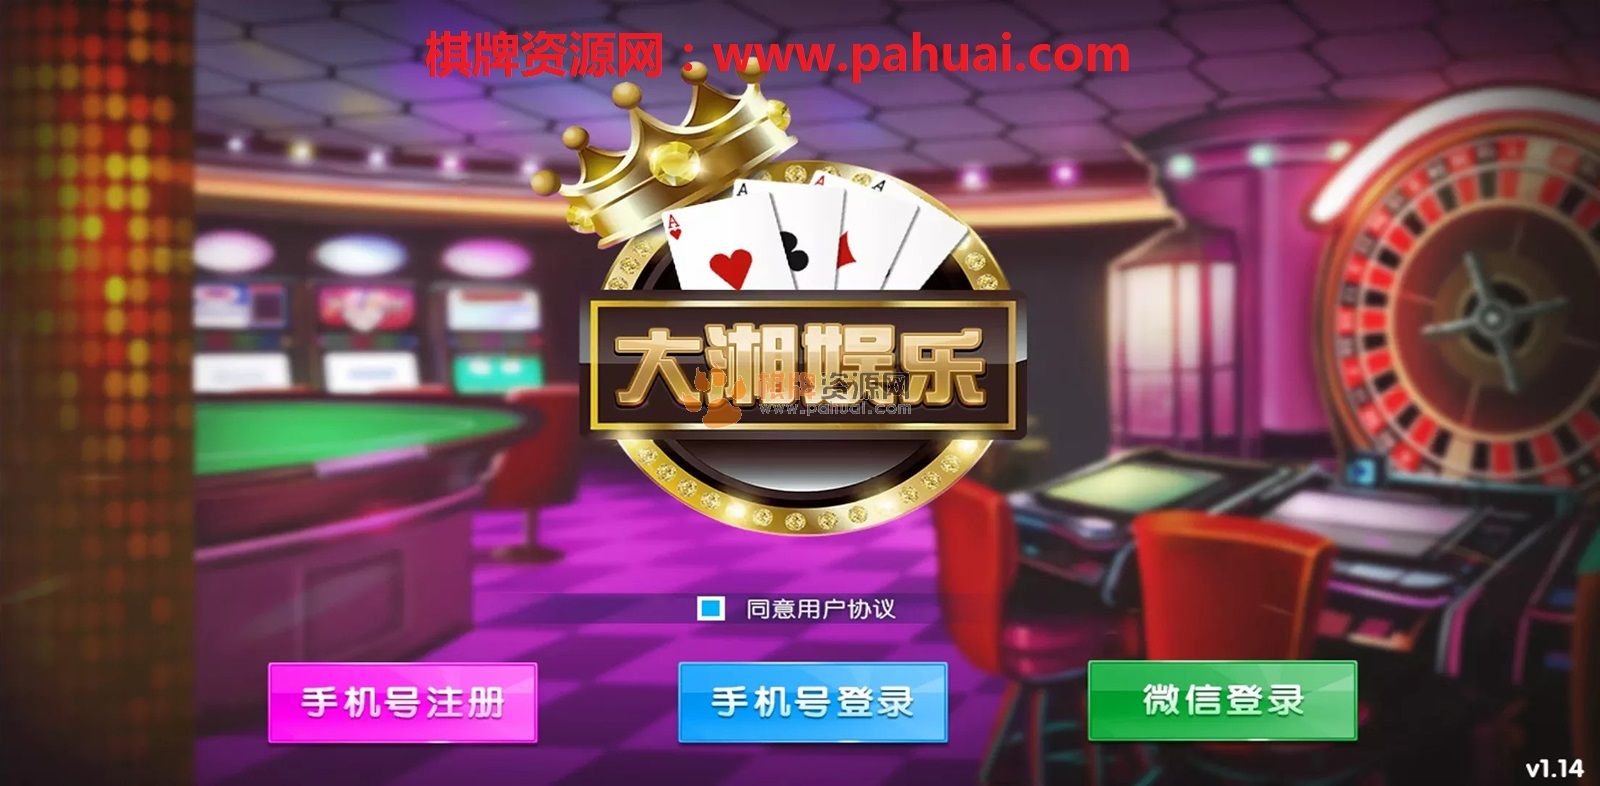 大湘娱乐棋牌房卡模式（联盟比赛）多玩法游戏平台源码组件